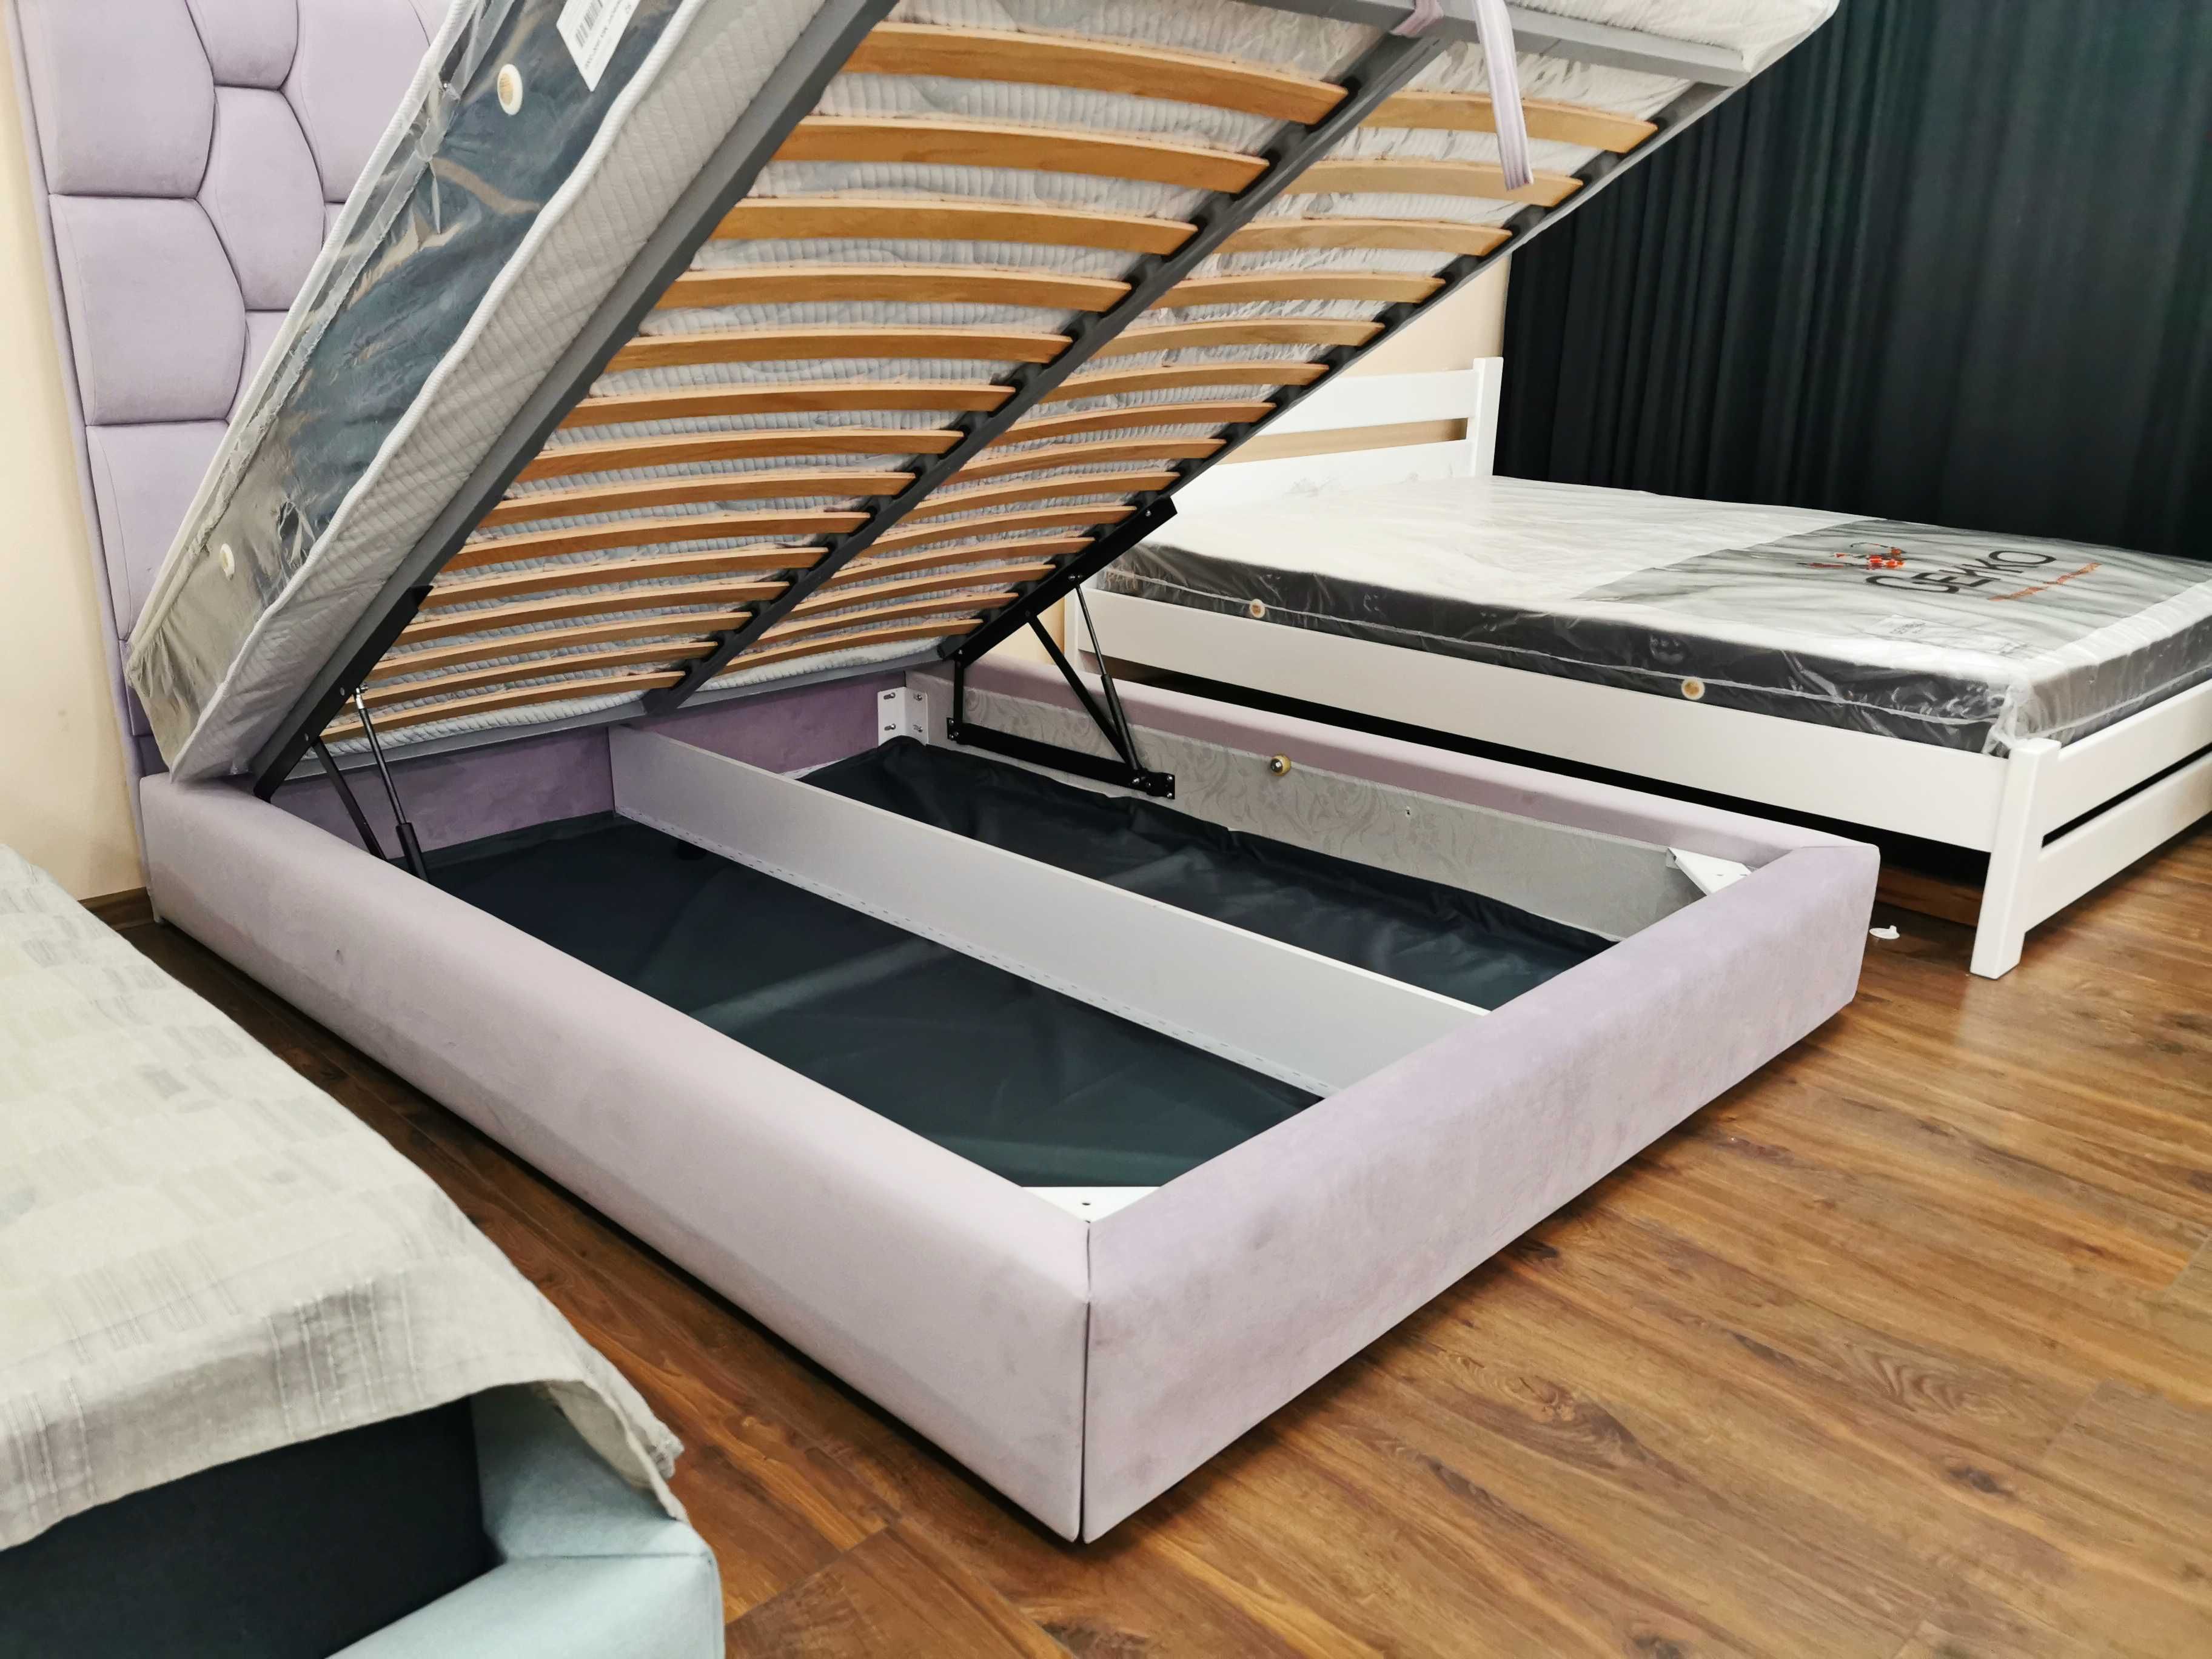 Мягкая двуспальная Кровать SAVERO 160Х200 с Подъёмным механизмом